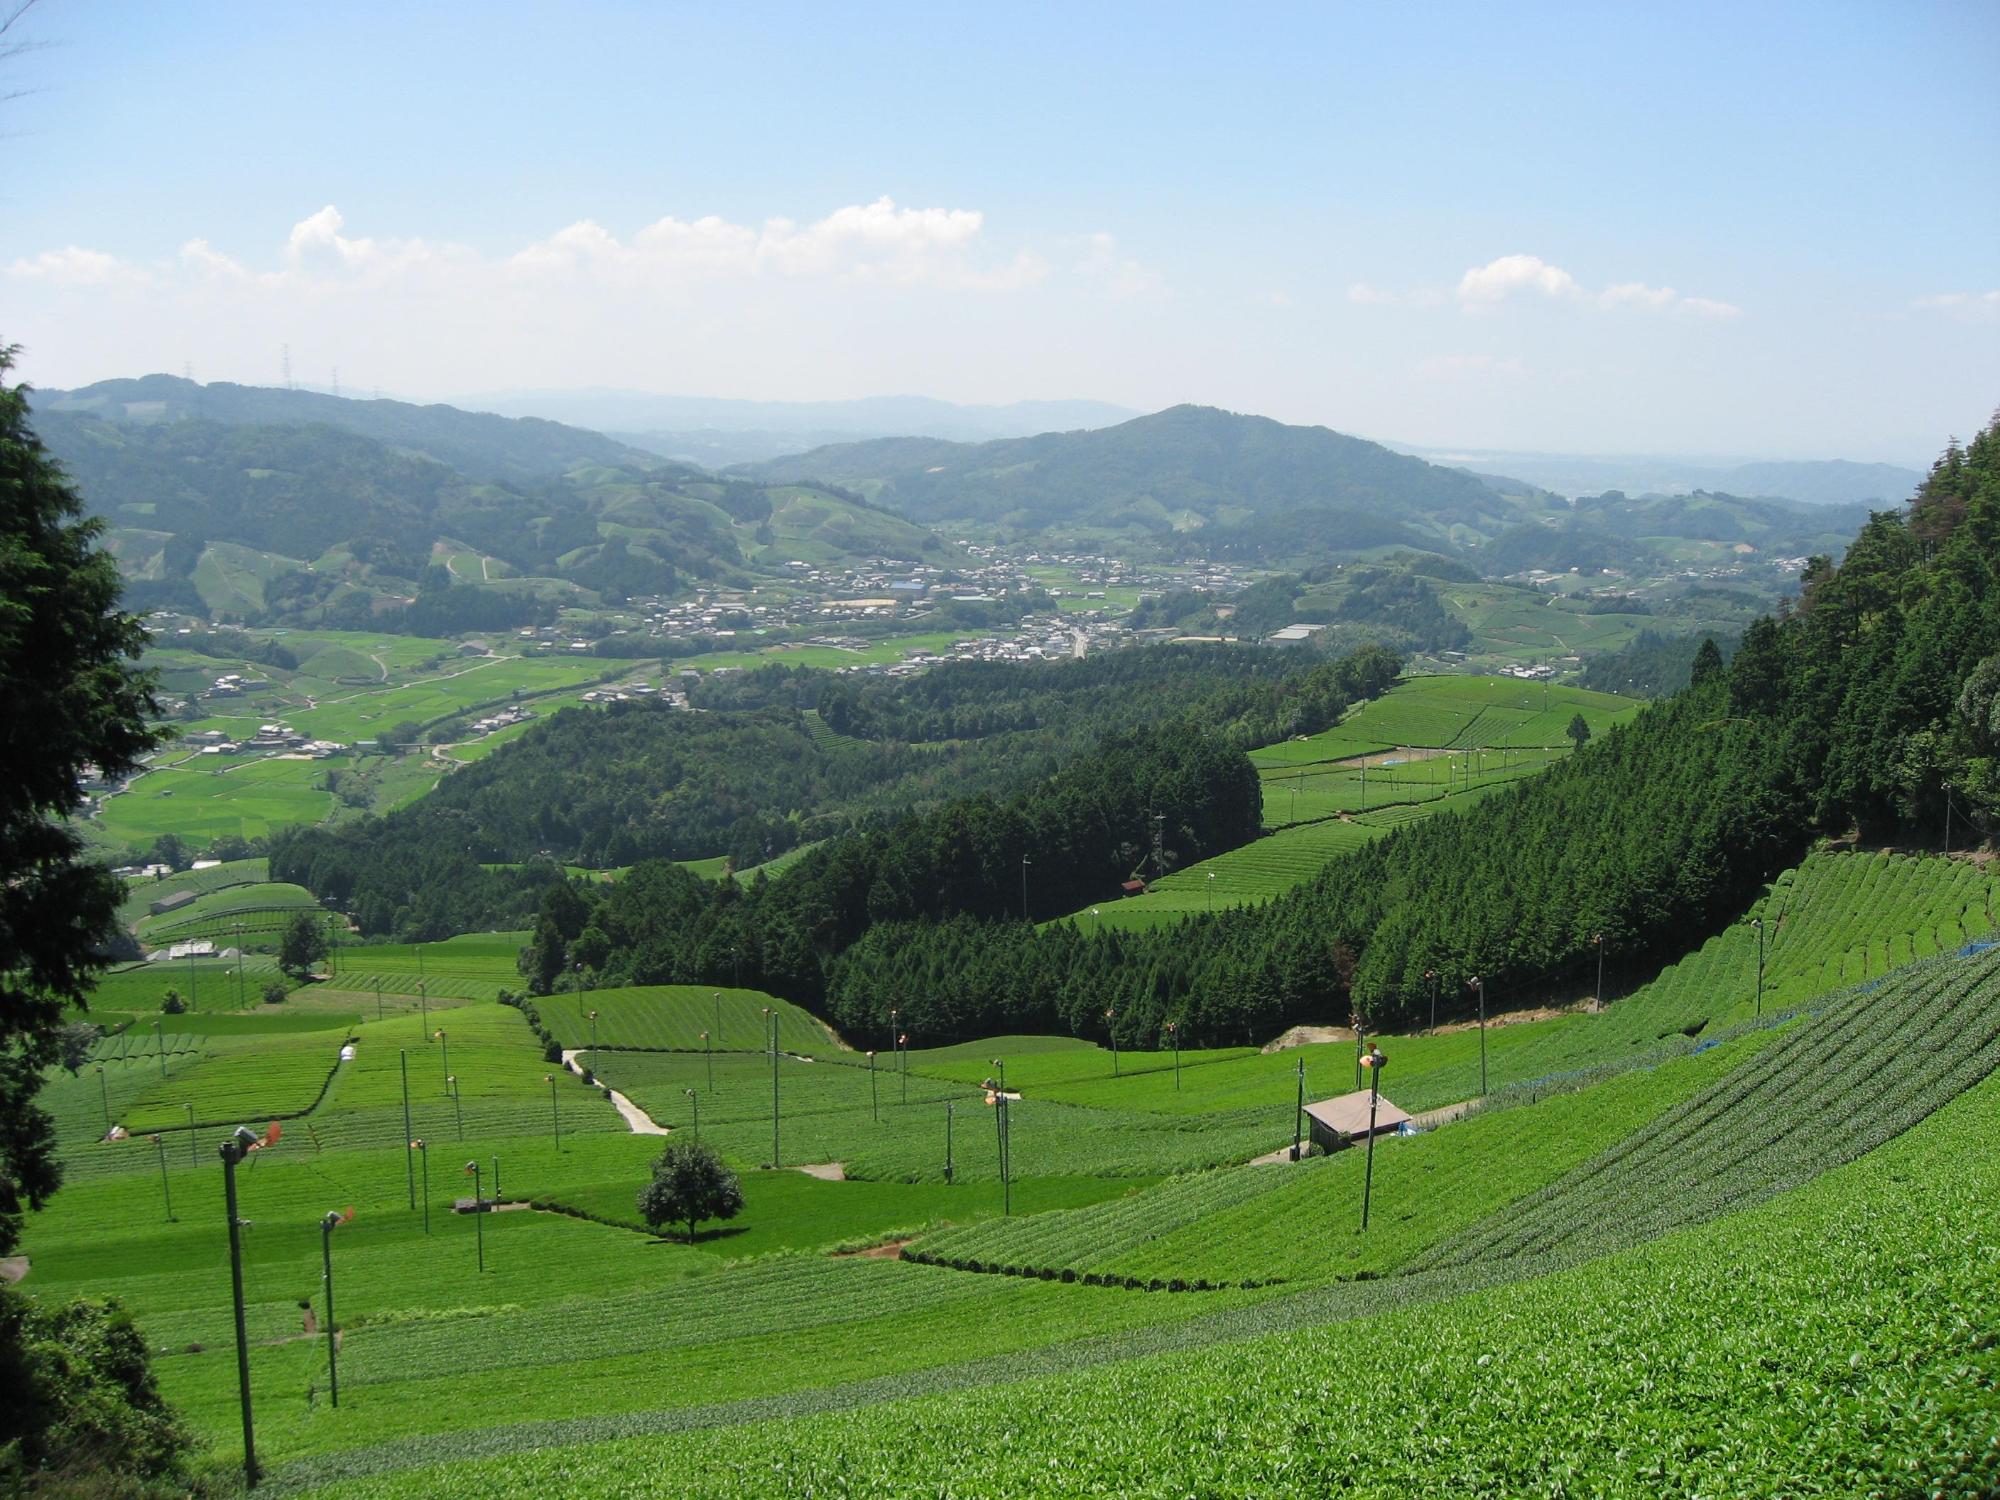 和束町原山の京都府景観資産に登録された上から見た茶畑の写真